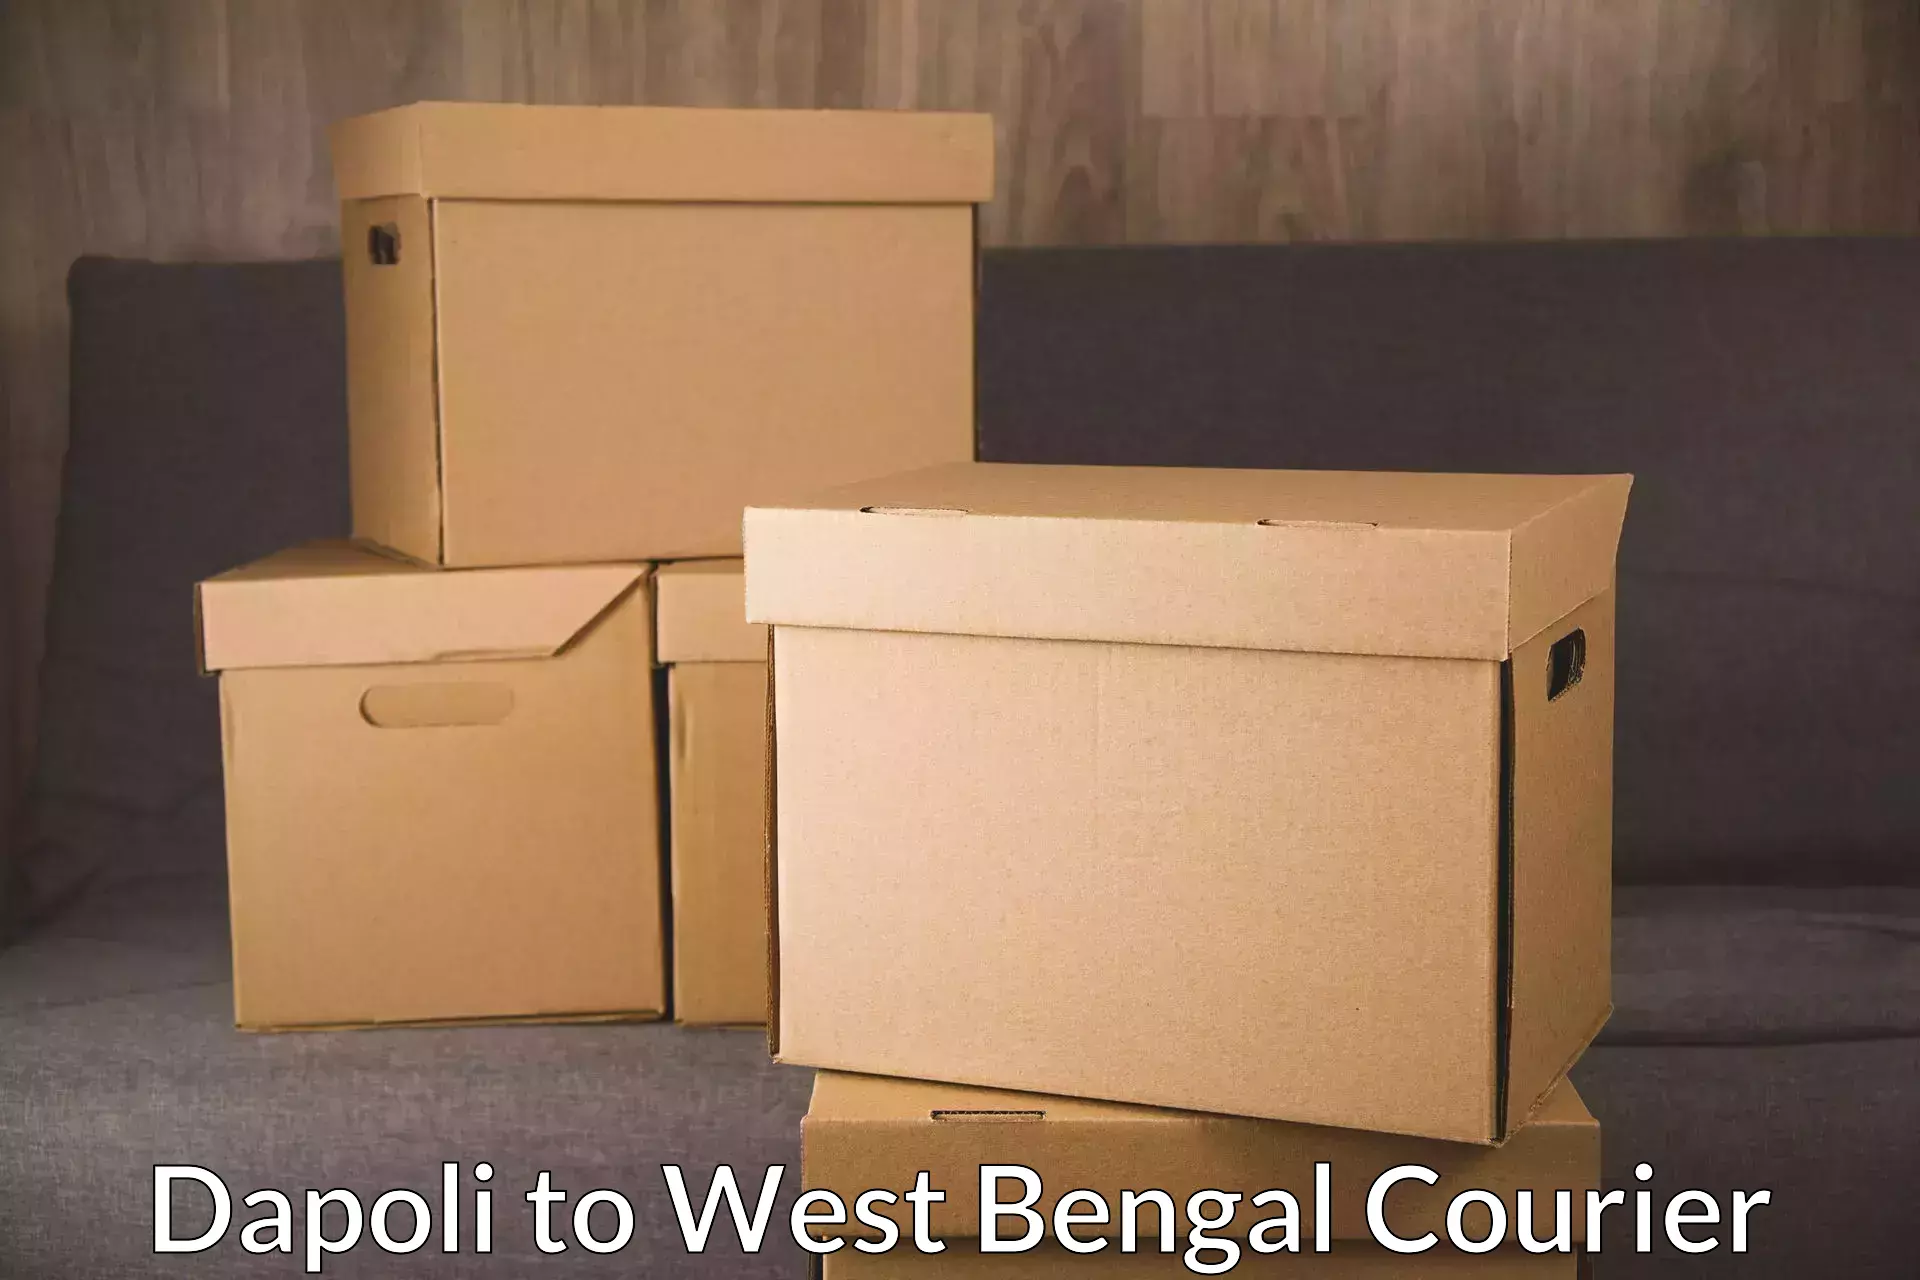 Residential courier service Dapoli to Kolkata Port